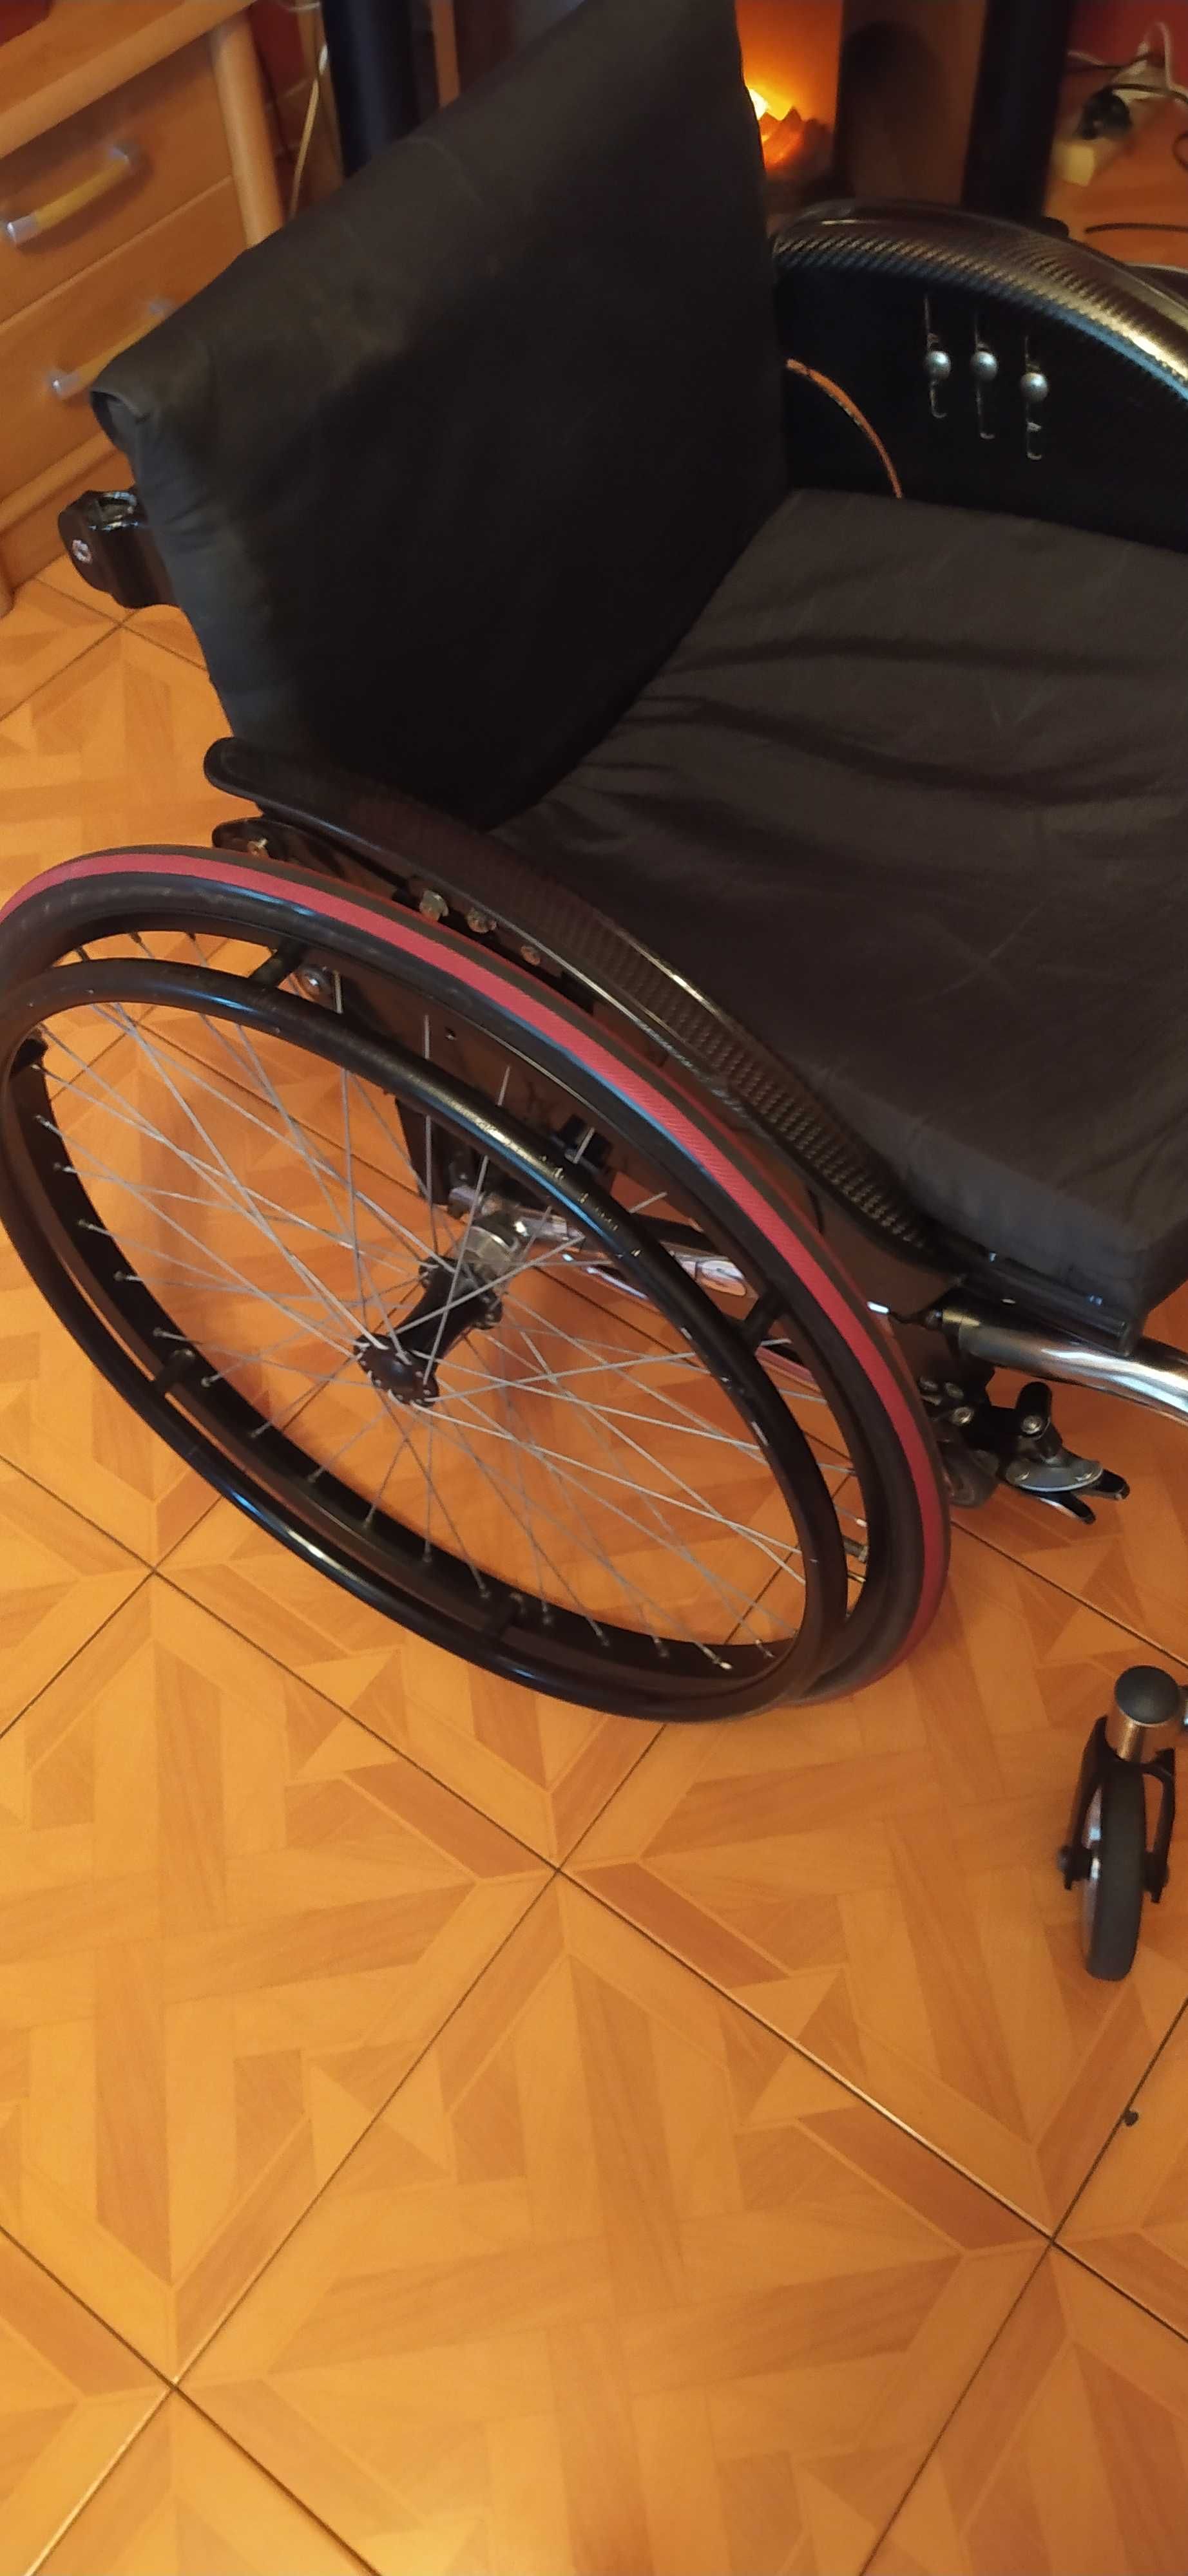 Okazja! Sprzedam wózek inwalidzki aktywny Offcarr